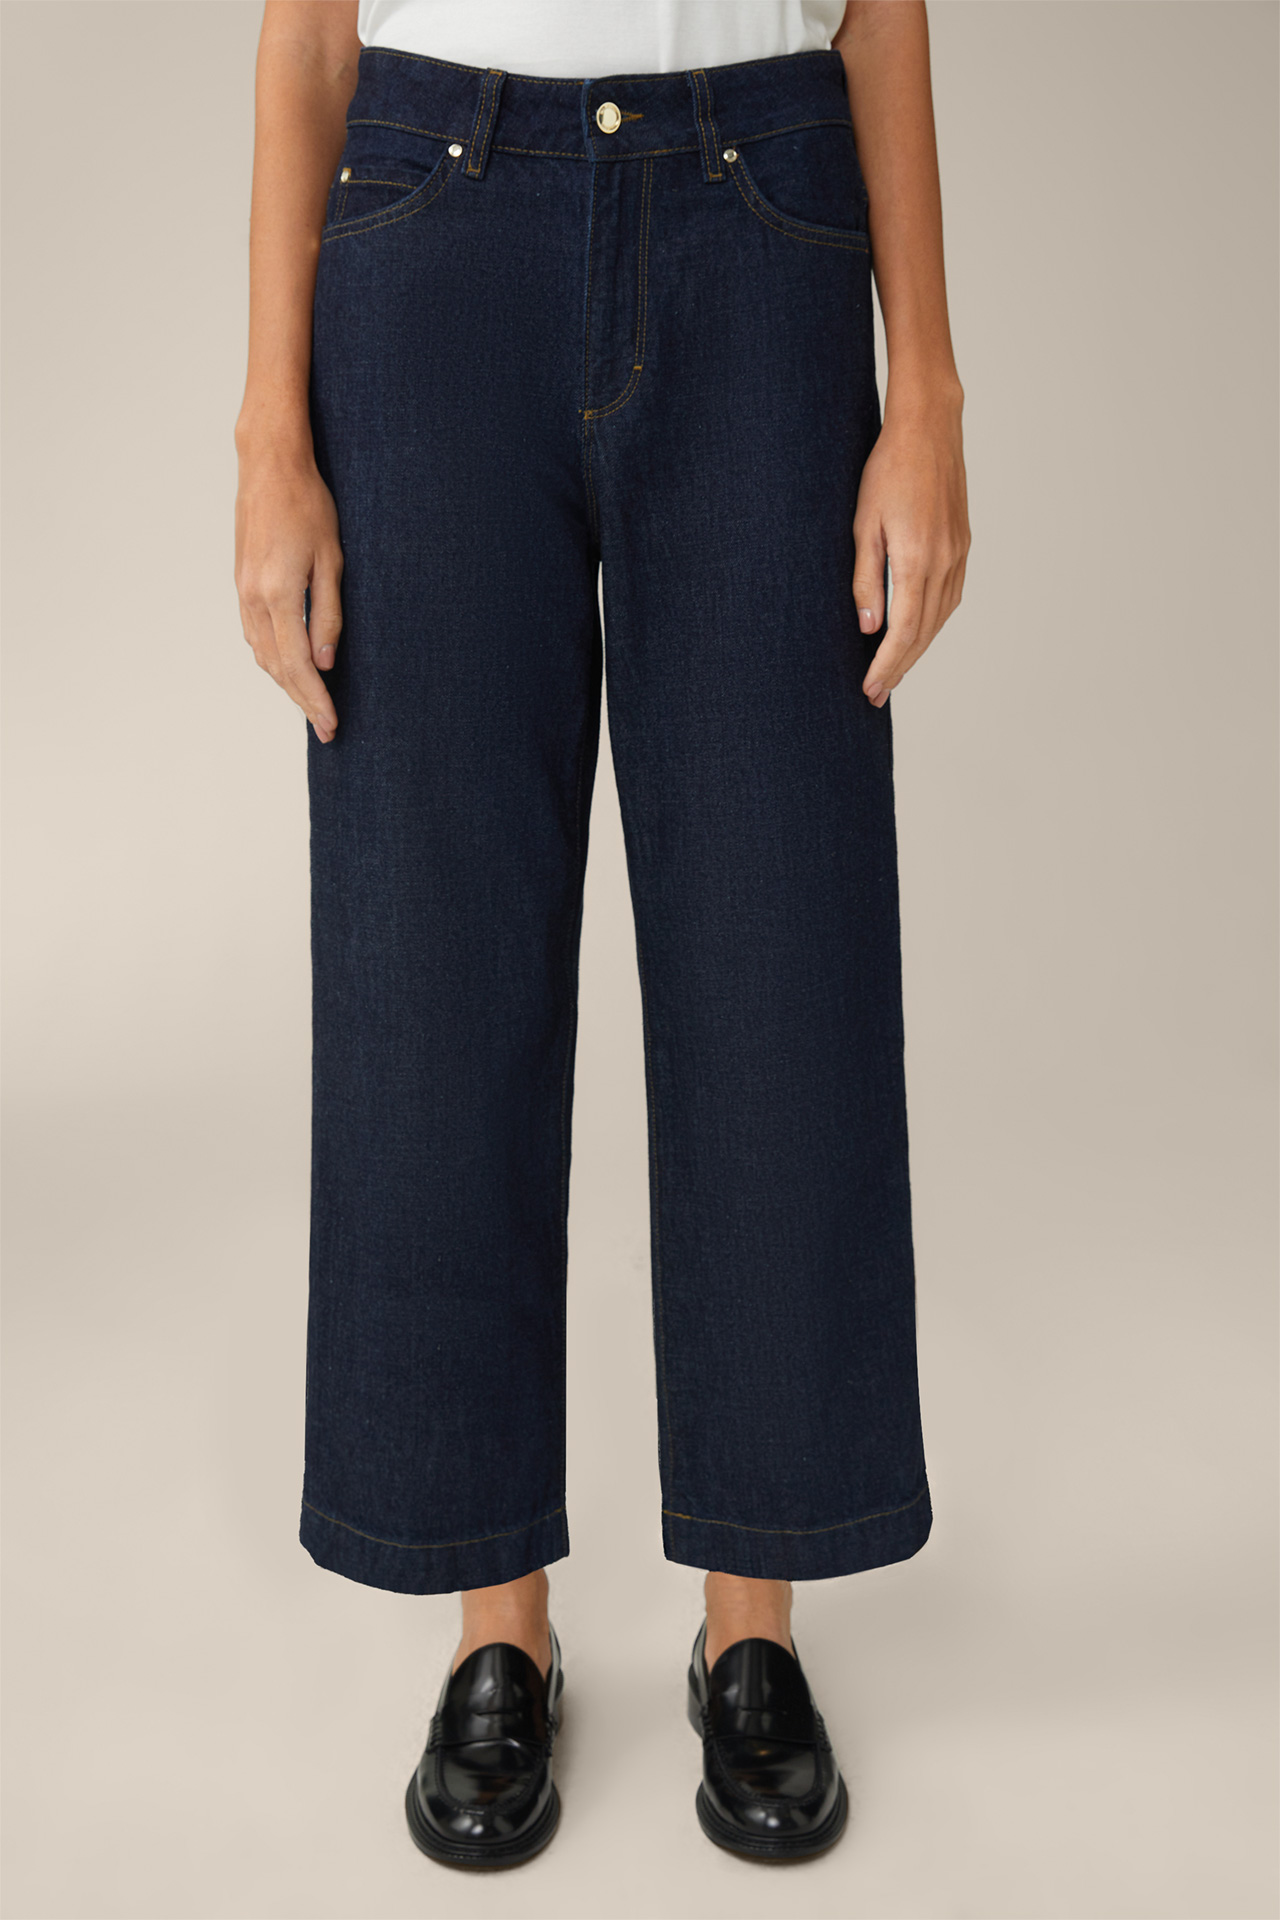 Jeans-culotte en jeans bleu foncé effet délavé